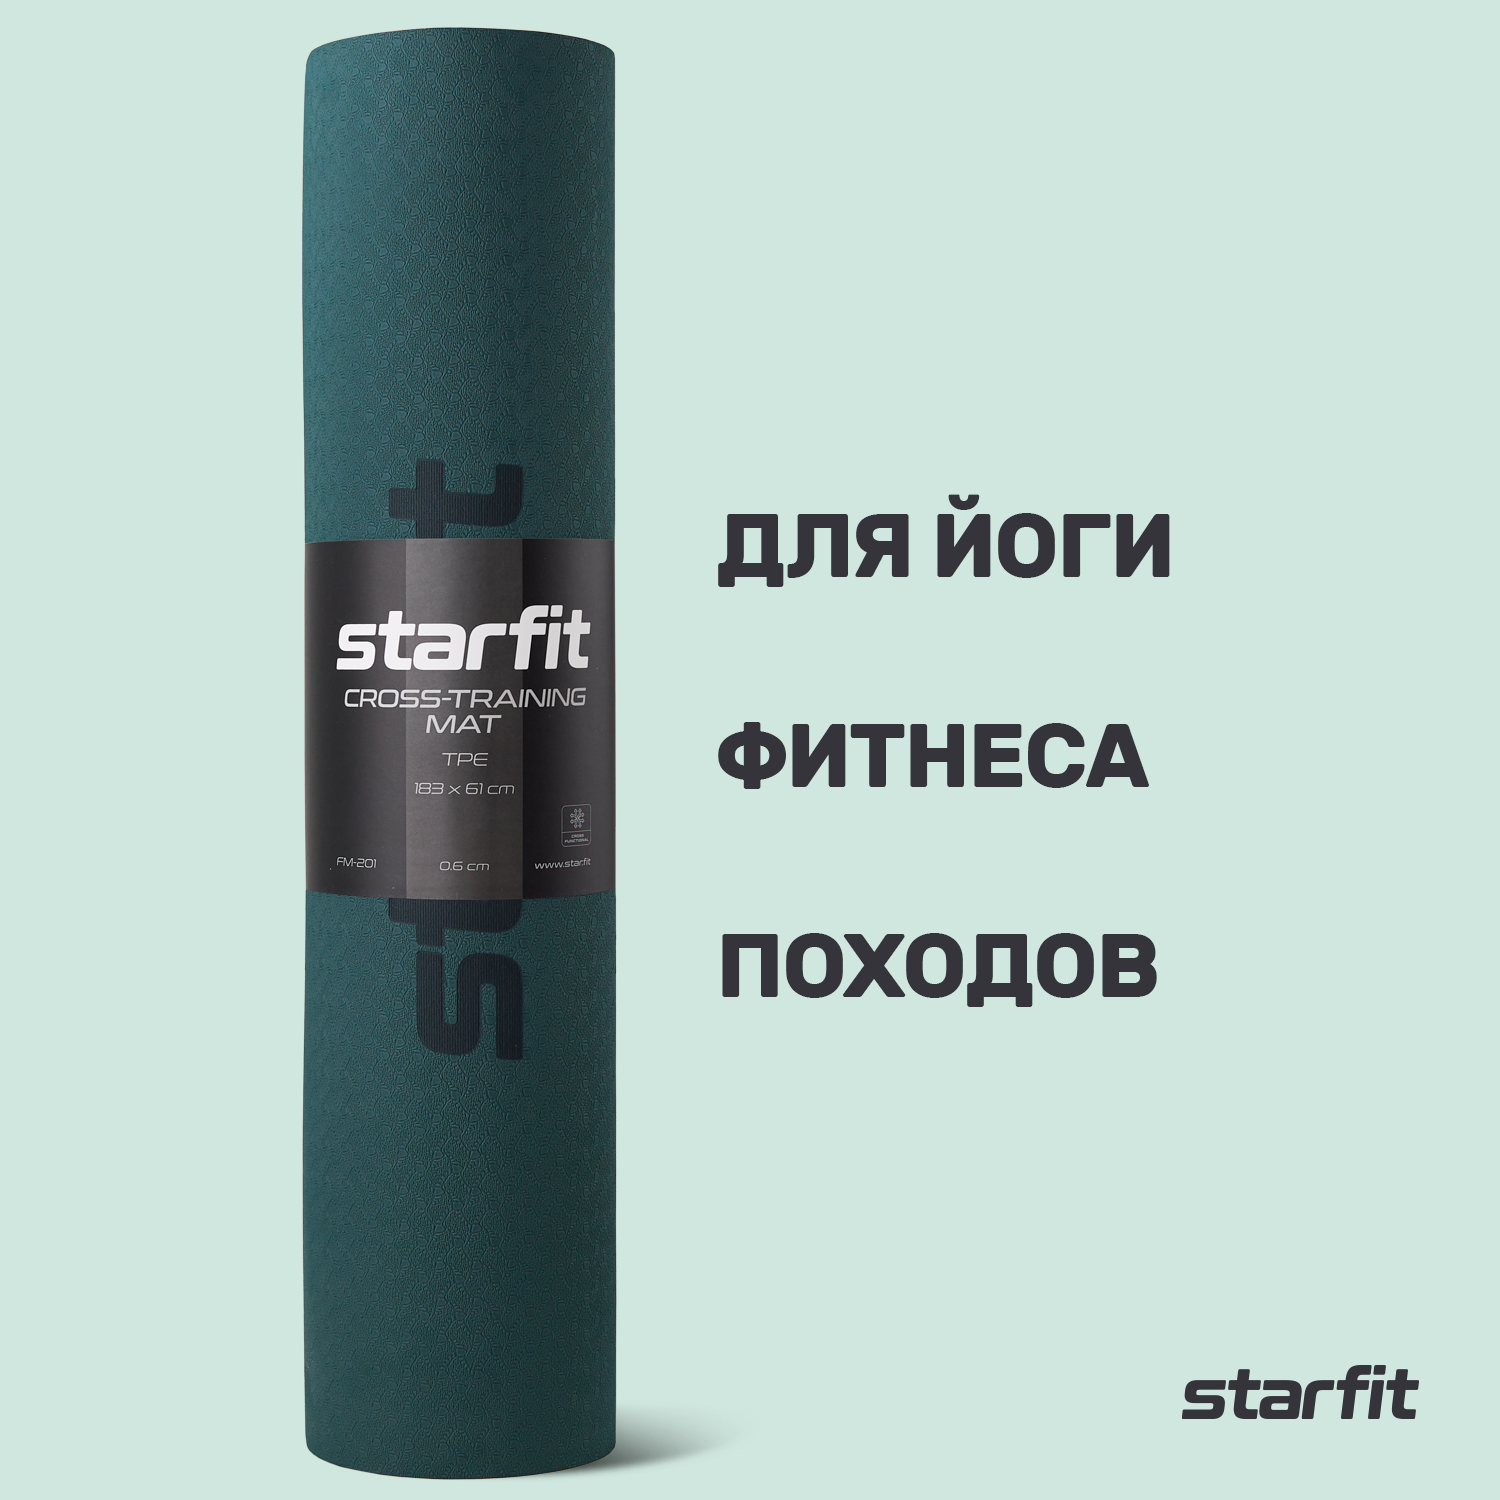 Коврик для йоги и фитнеса STARFIT FM-201 TPE, 0,6 см, 183x61 см, черный/холодный океан